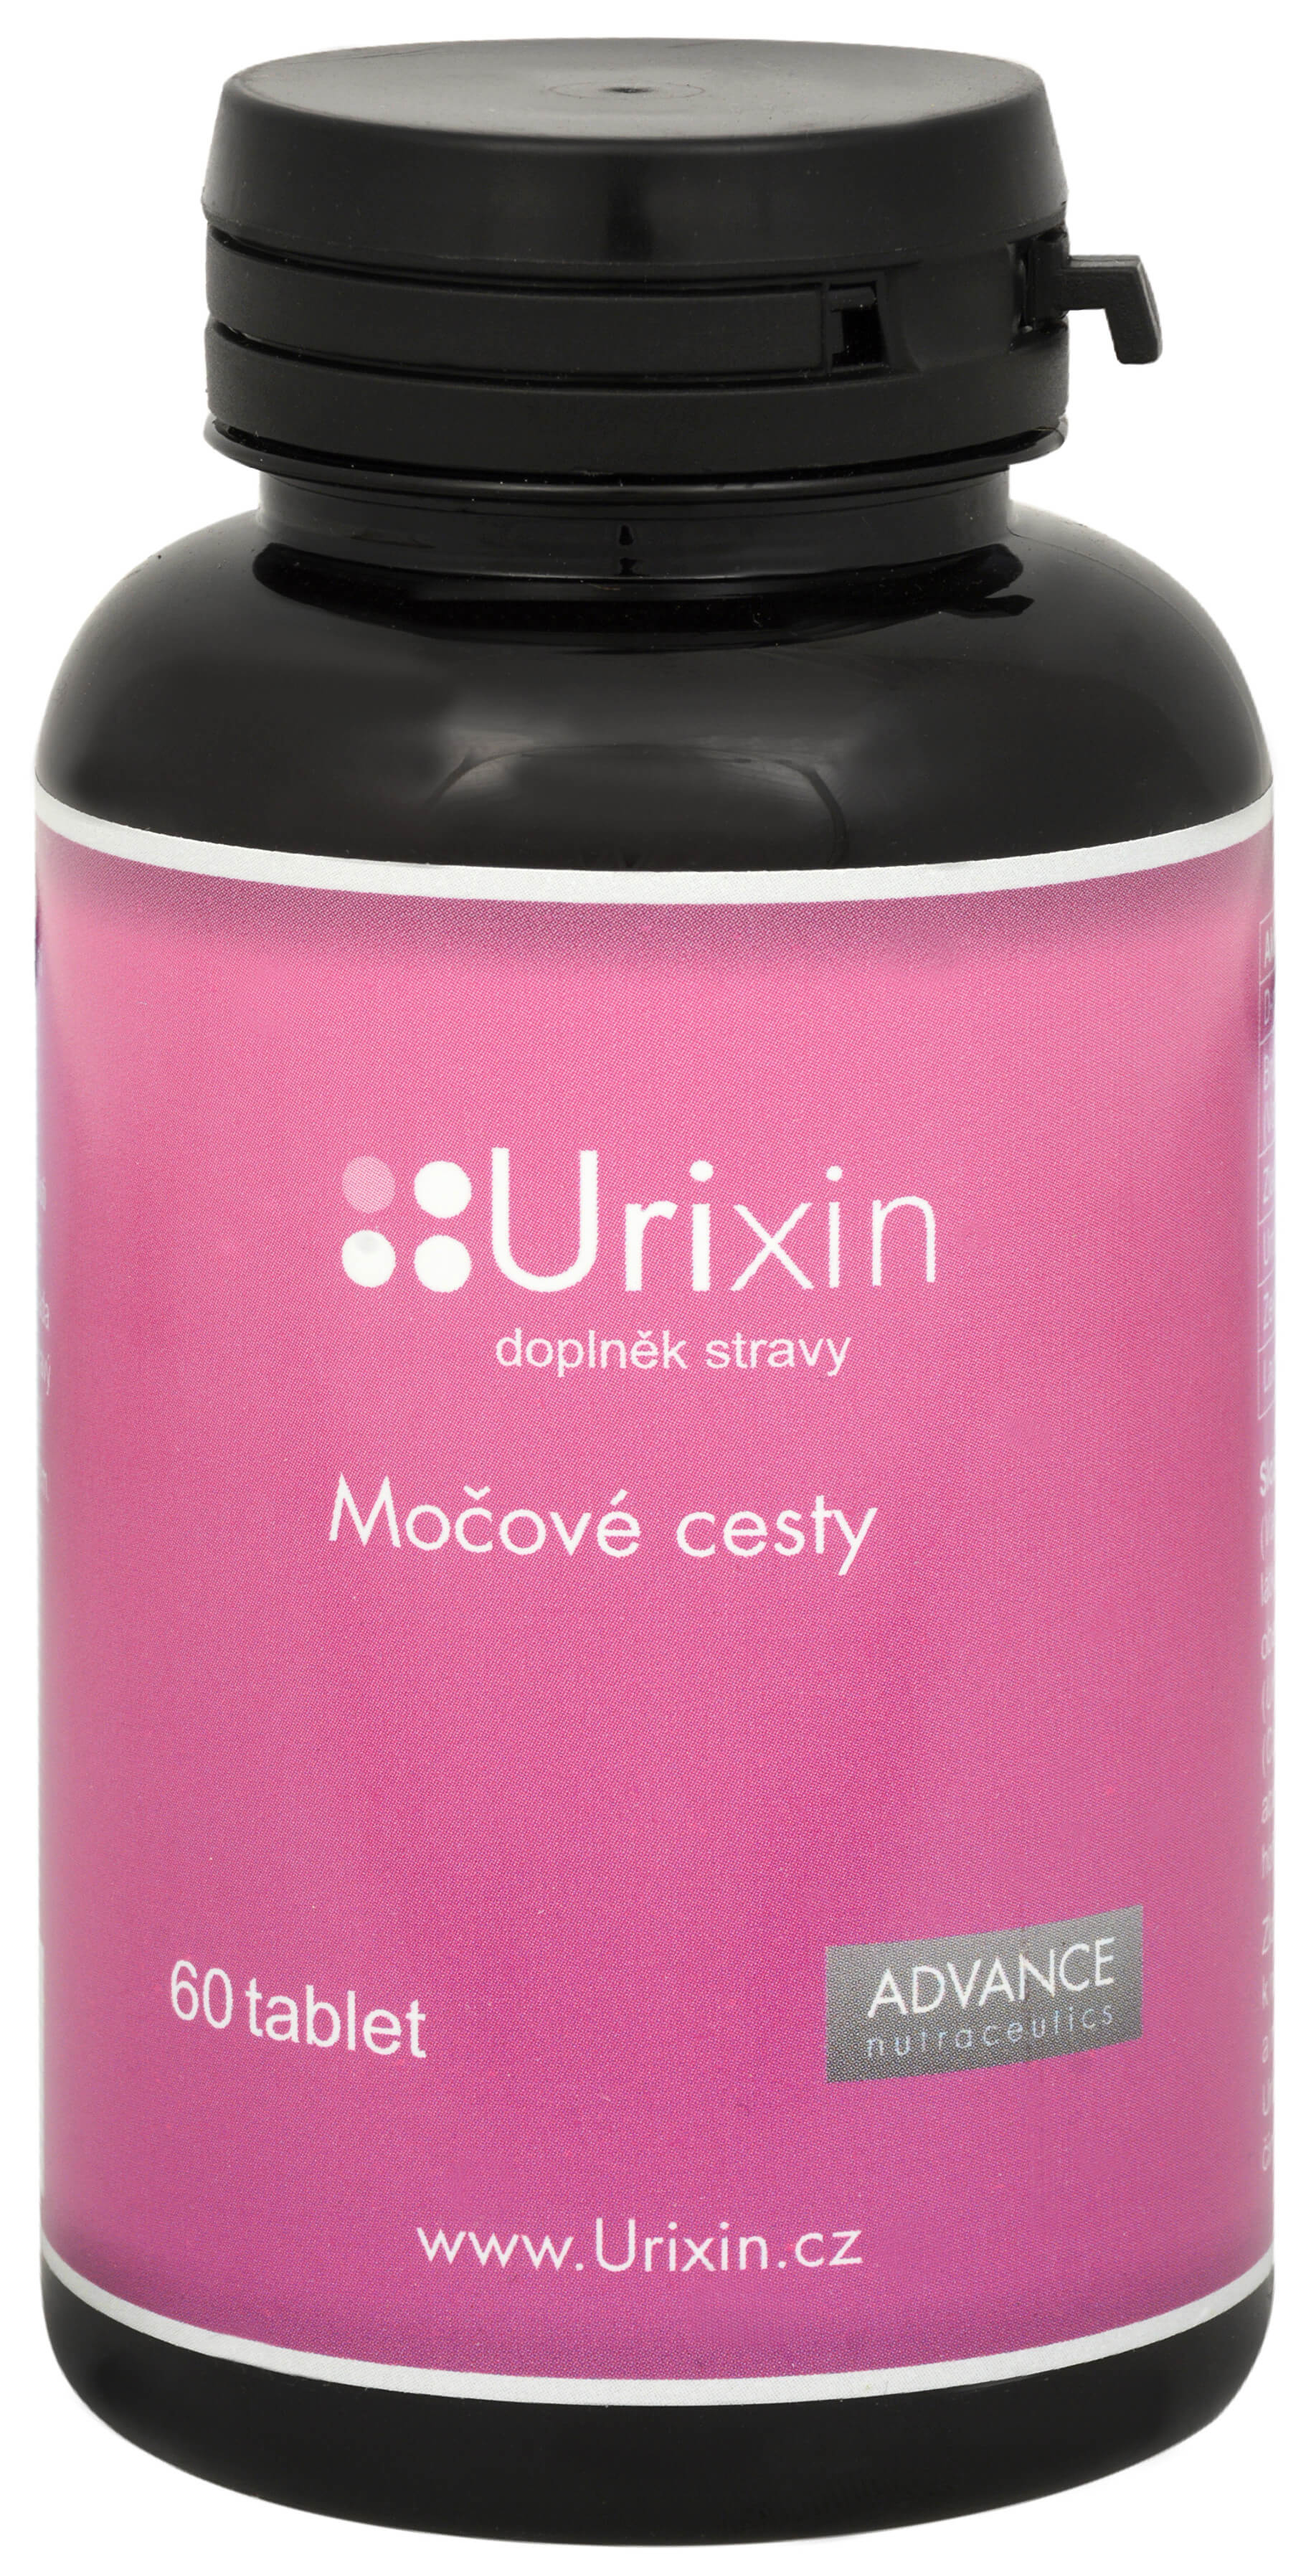 Zobrazit detail výrobku Advance nutraceutics Urixin 60 tbl.